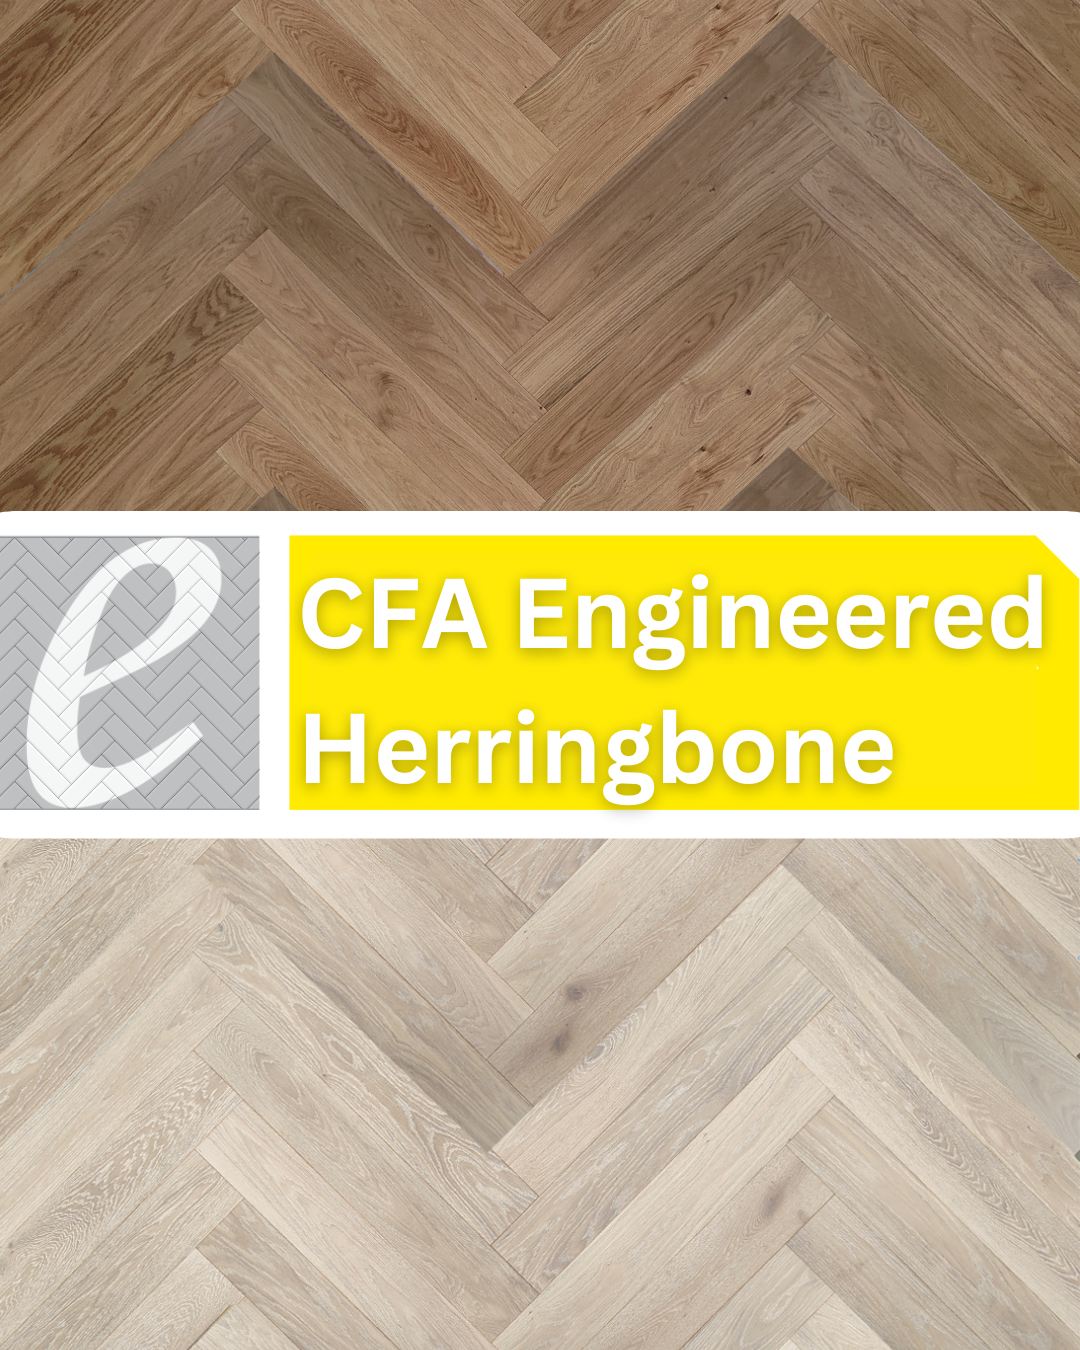 CFA Engineered Timber Herringbone